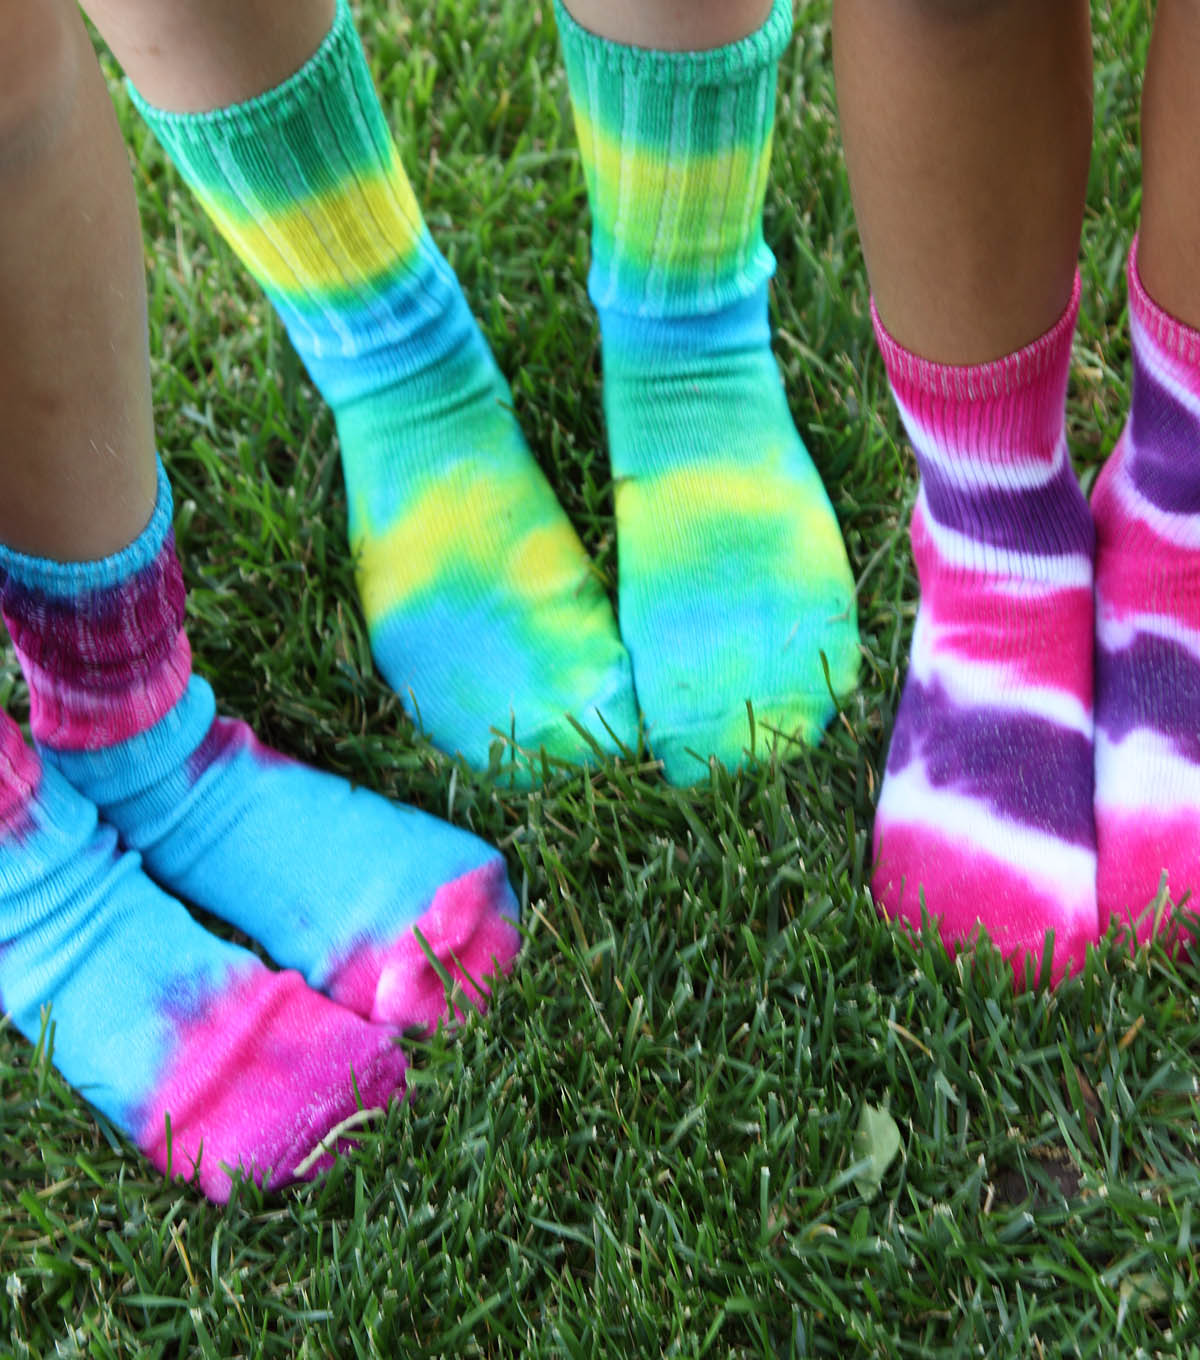 How to Tie Dye Socks: DIY Tie Dyed Socks | JOANN